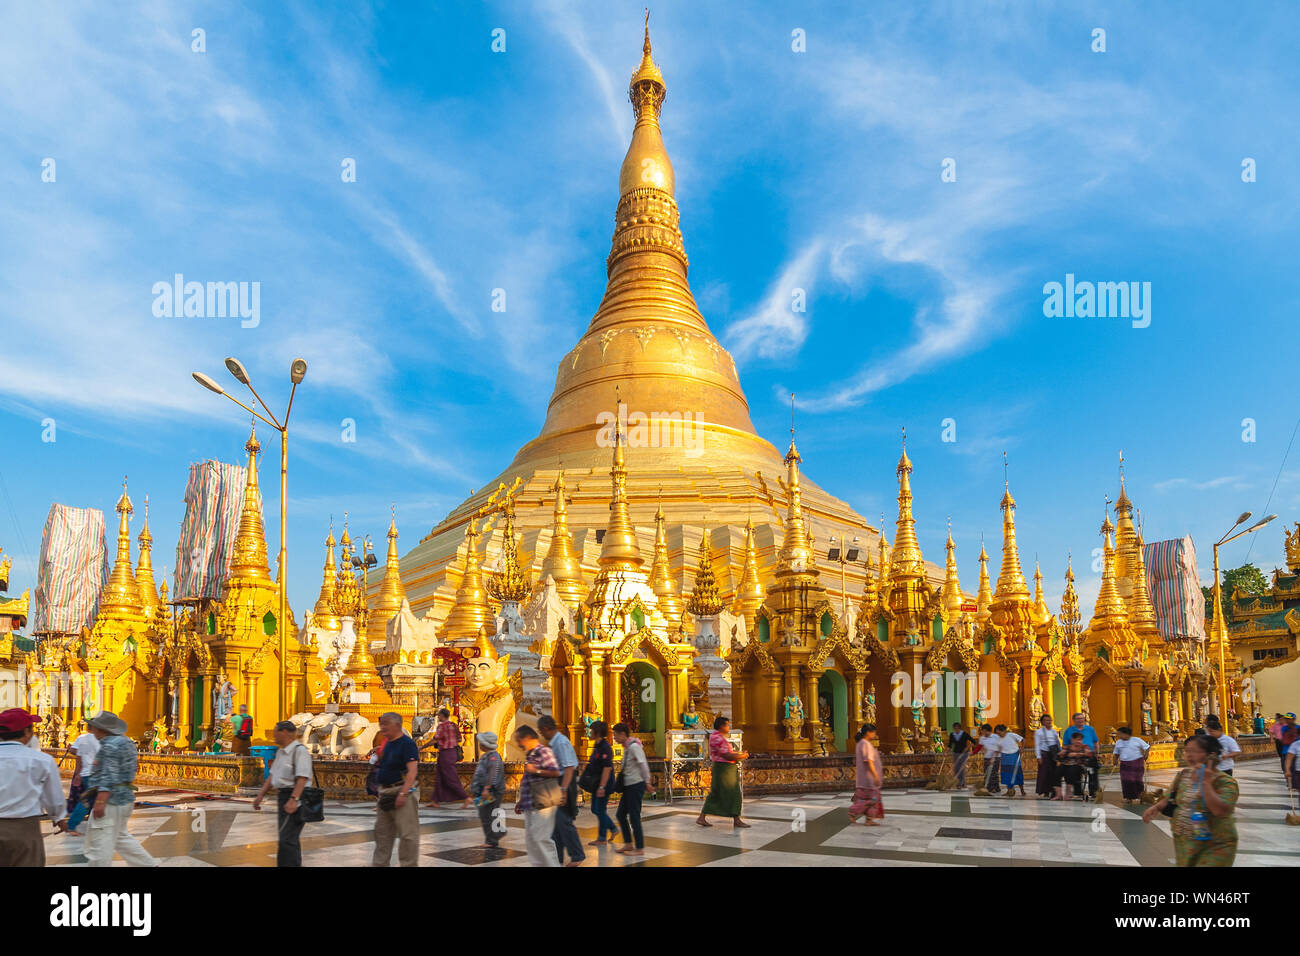 Shwedagon Paya pagoda, or Shwedagon Zedi Daw, Yangon, Myanmar Stock Photo